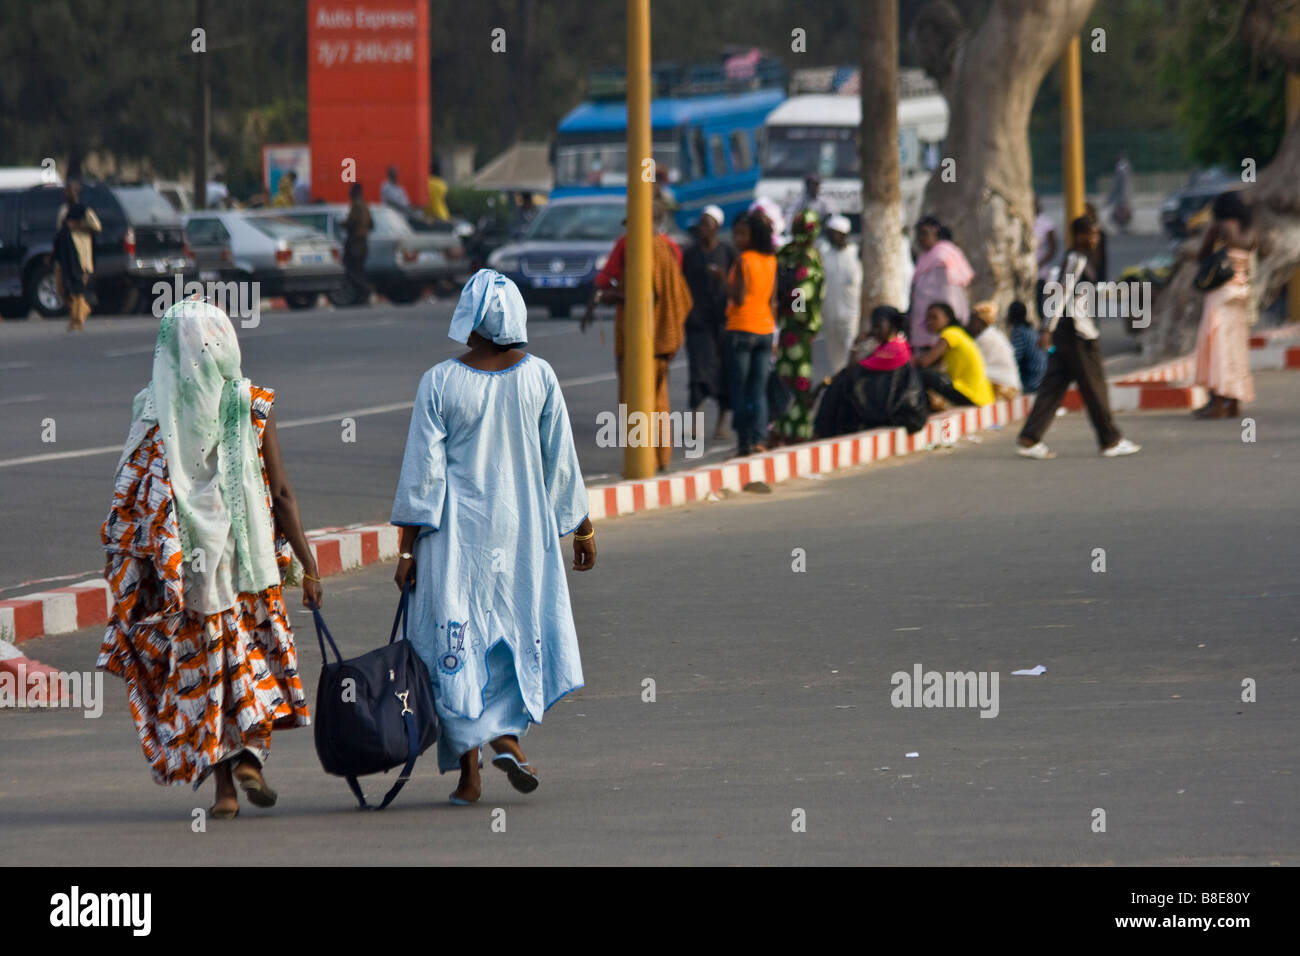 Deux femmes portant un sac à Dakar au Sénégal Banque D'Images